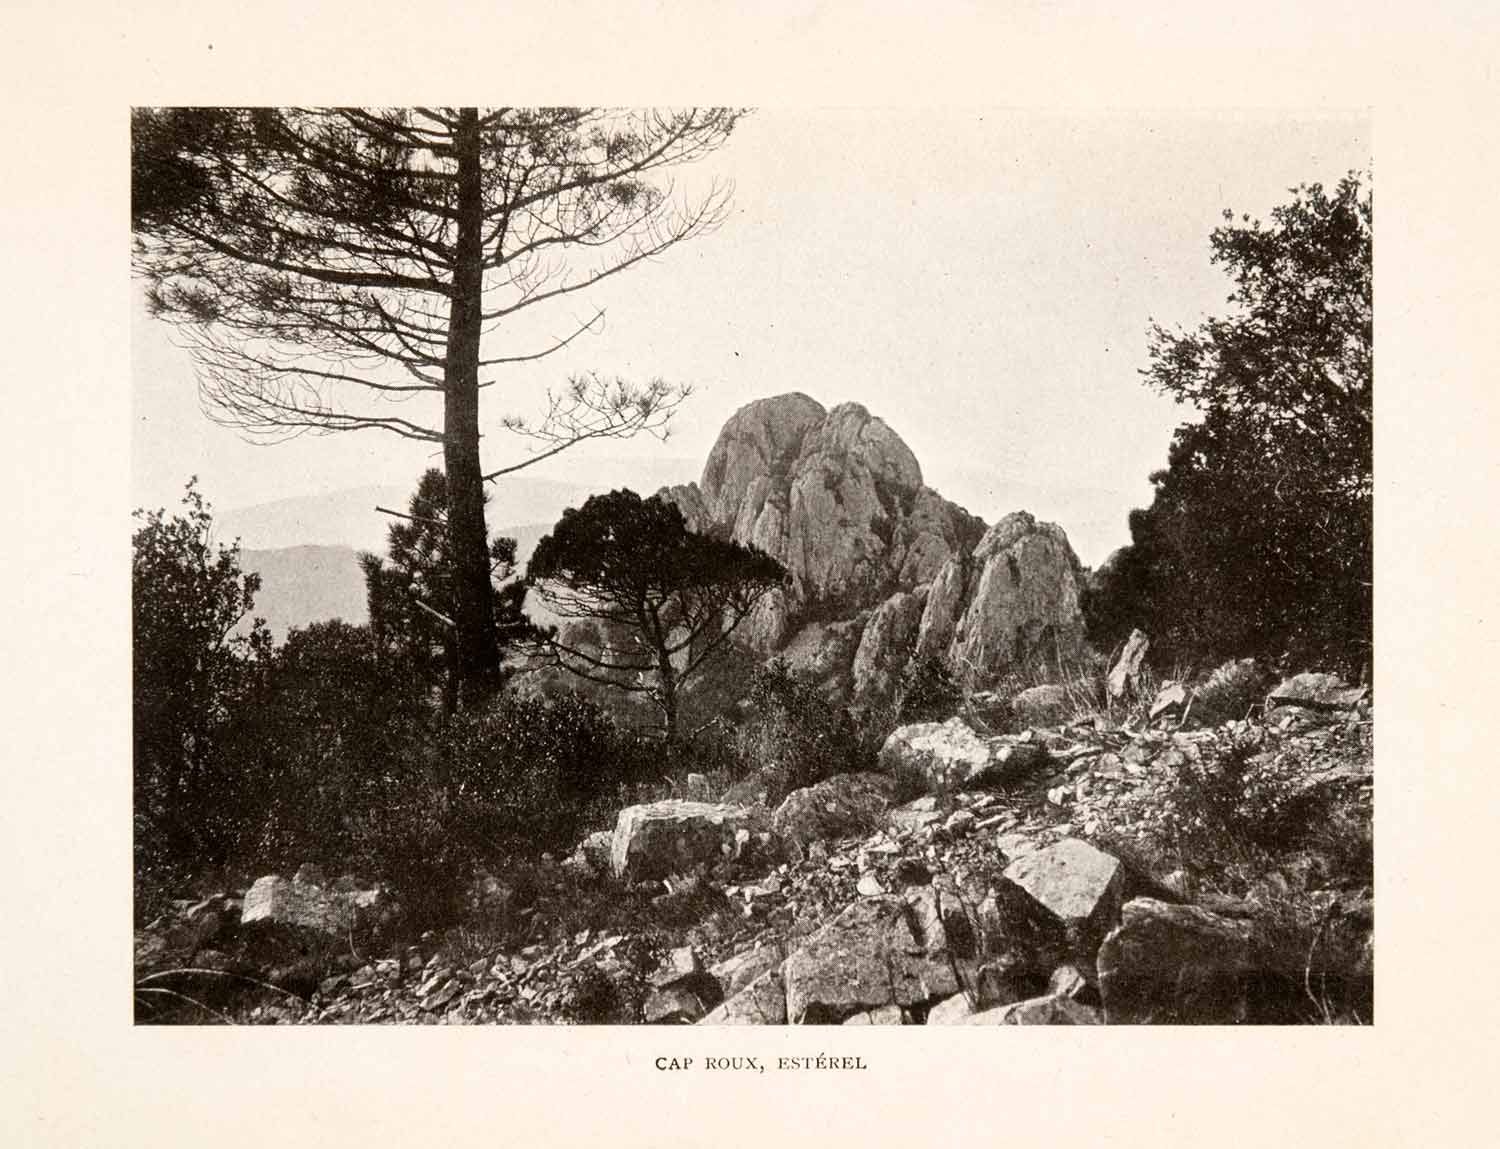 1905 Halftone Print Cap Roux Esterel France Liguria Cote d'Azur Landscape XGHA8